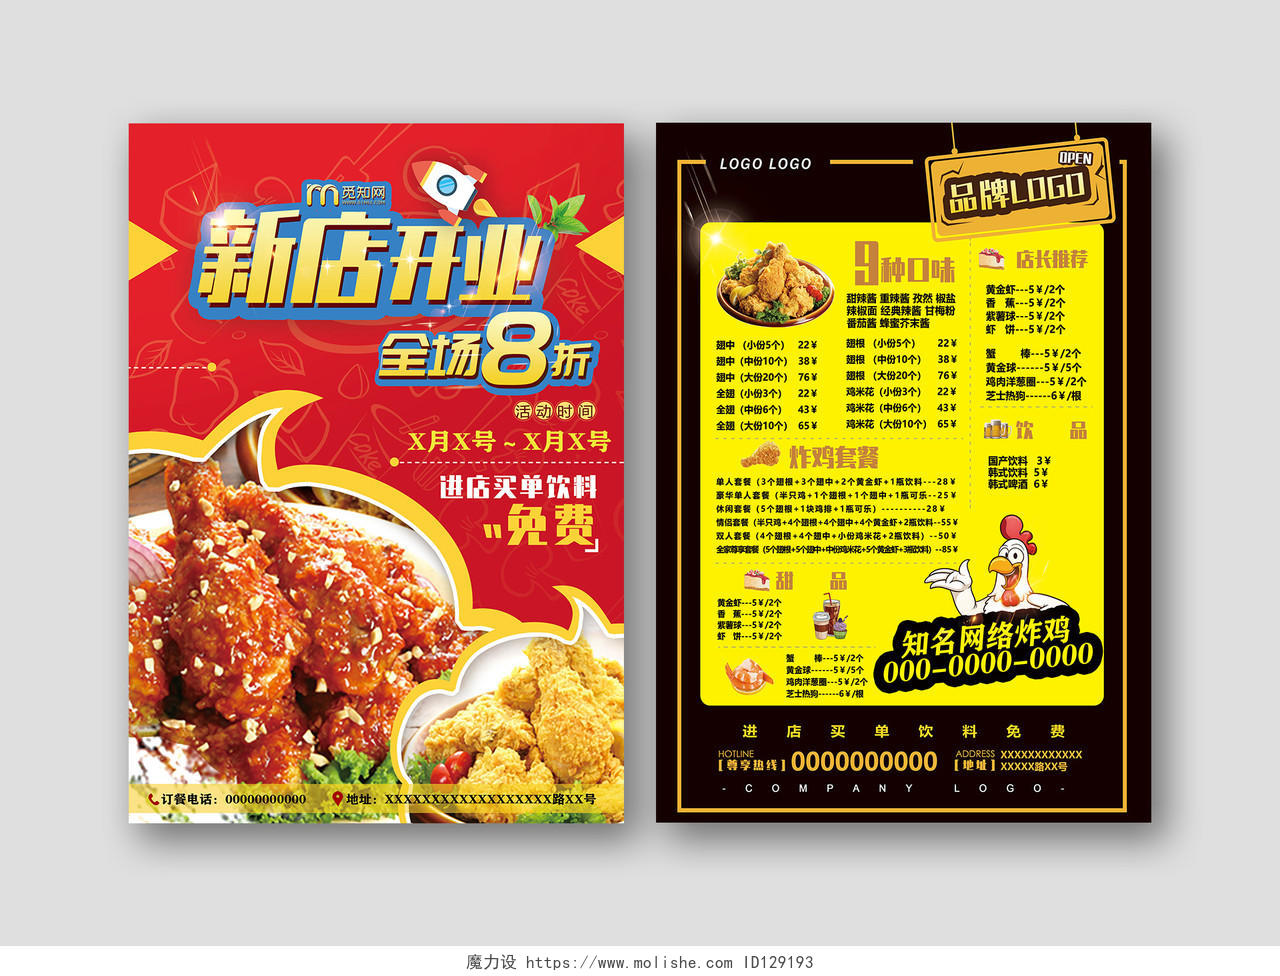 红色炸鸡新店开业全场优惠活动宣传菜单美食快餐炸鸡